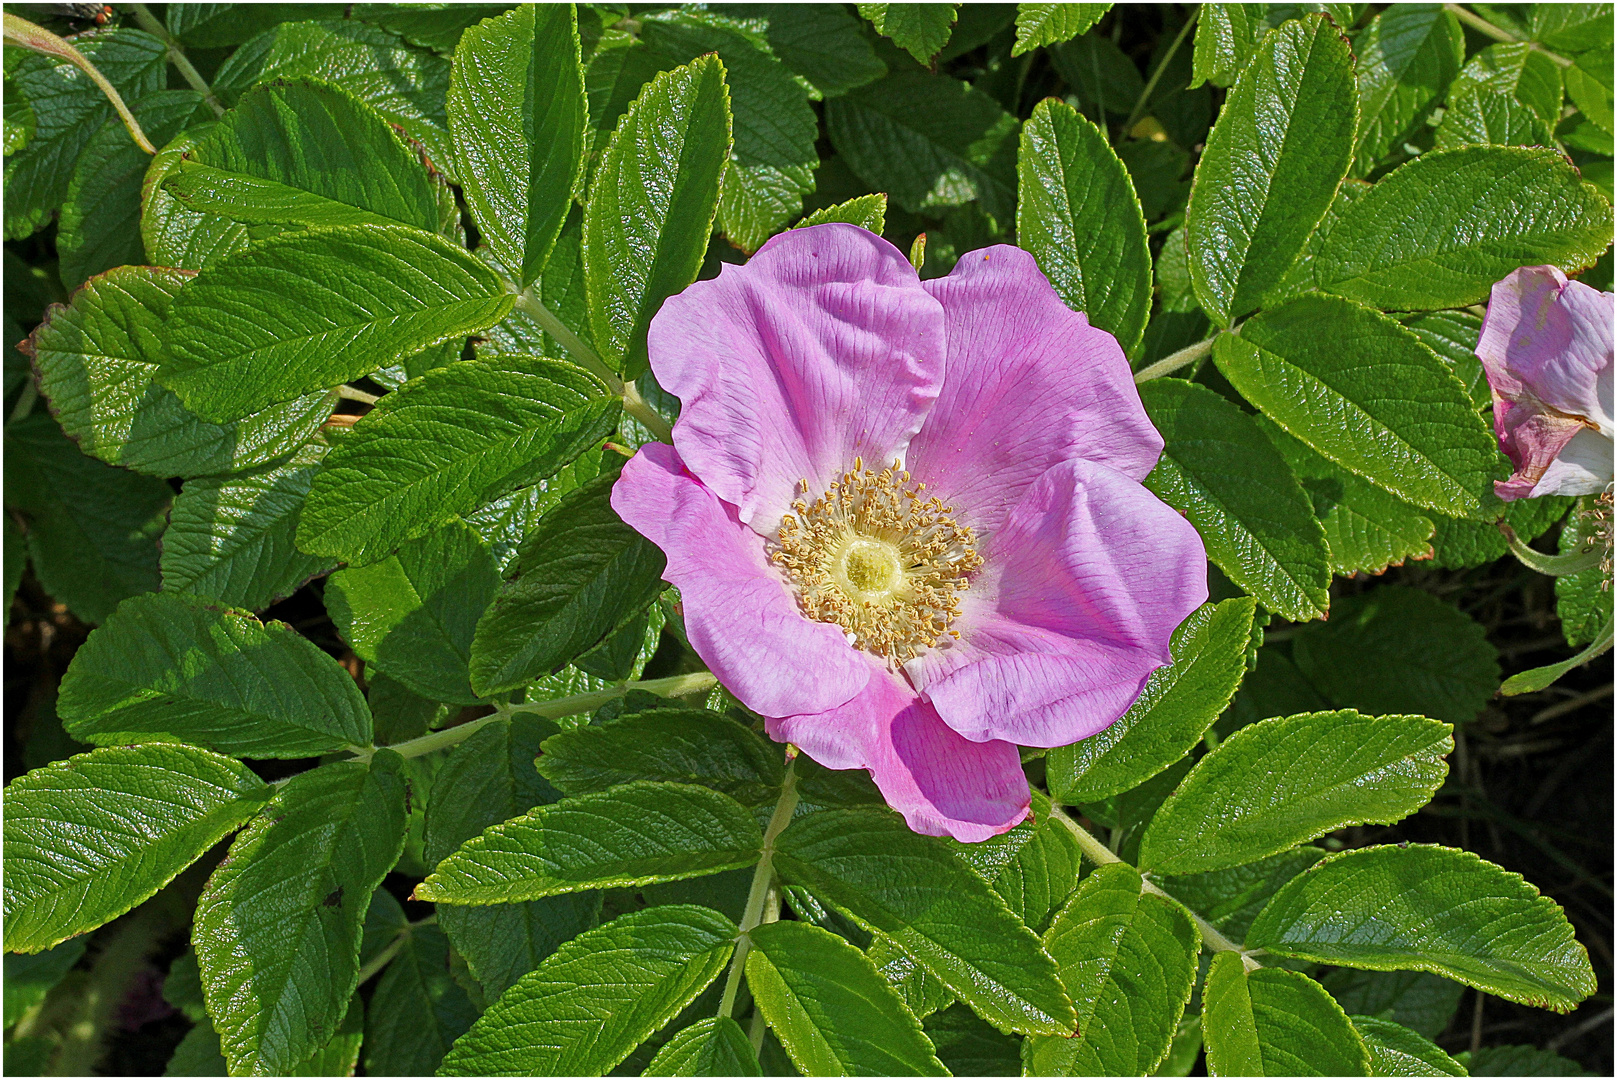 Rosa rugosa. Gesehen in einem Garten in Keitum, Sylt